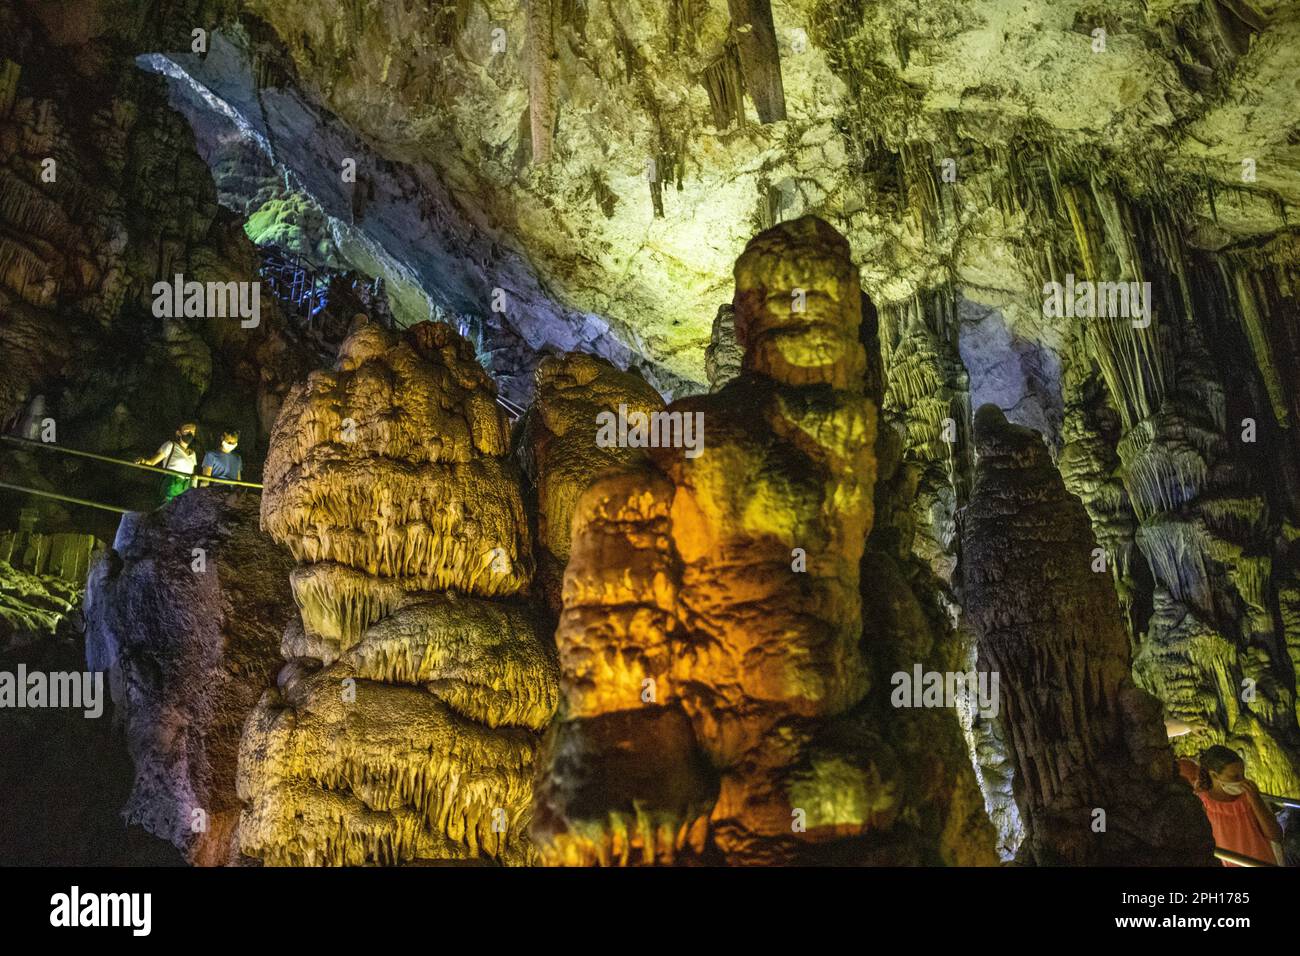 Grotte stalactite en Crète, lieu de naissance de Zeus. Photo de haute qualité Banque D'Images